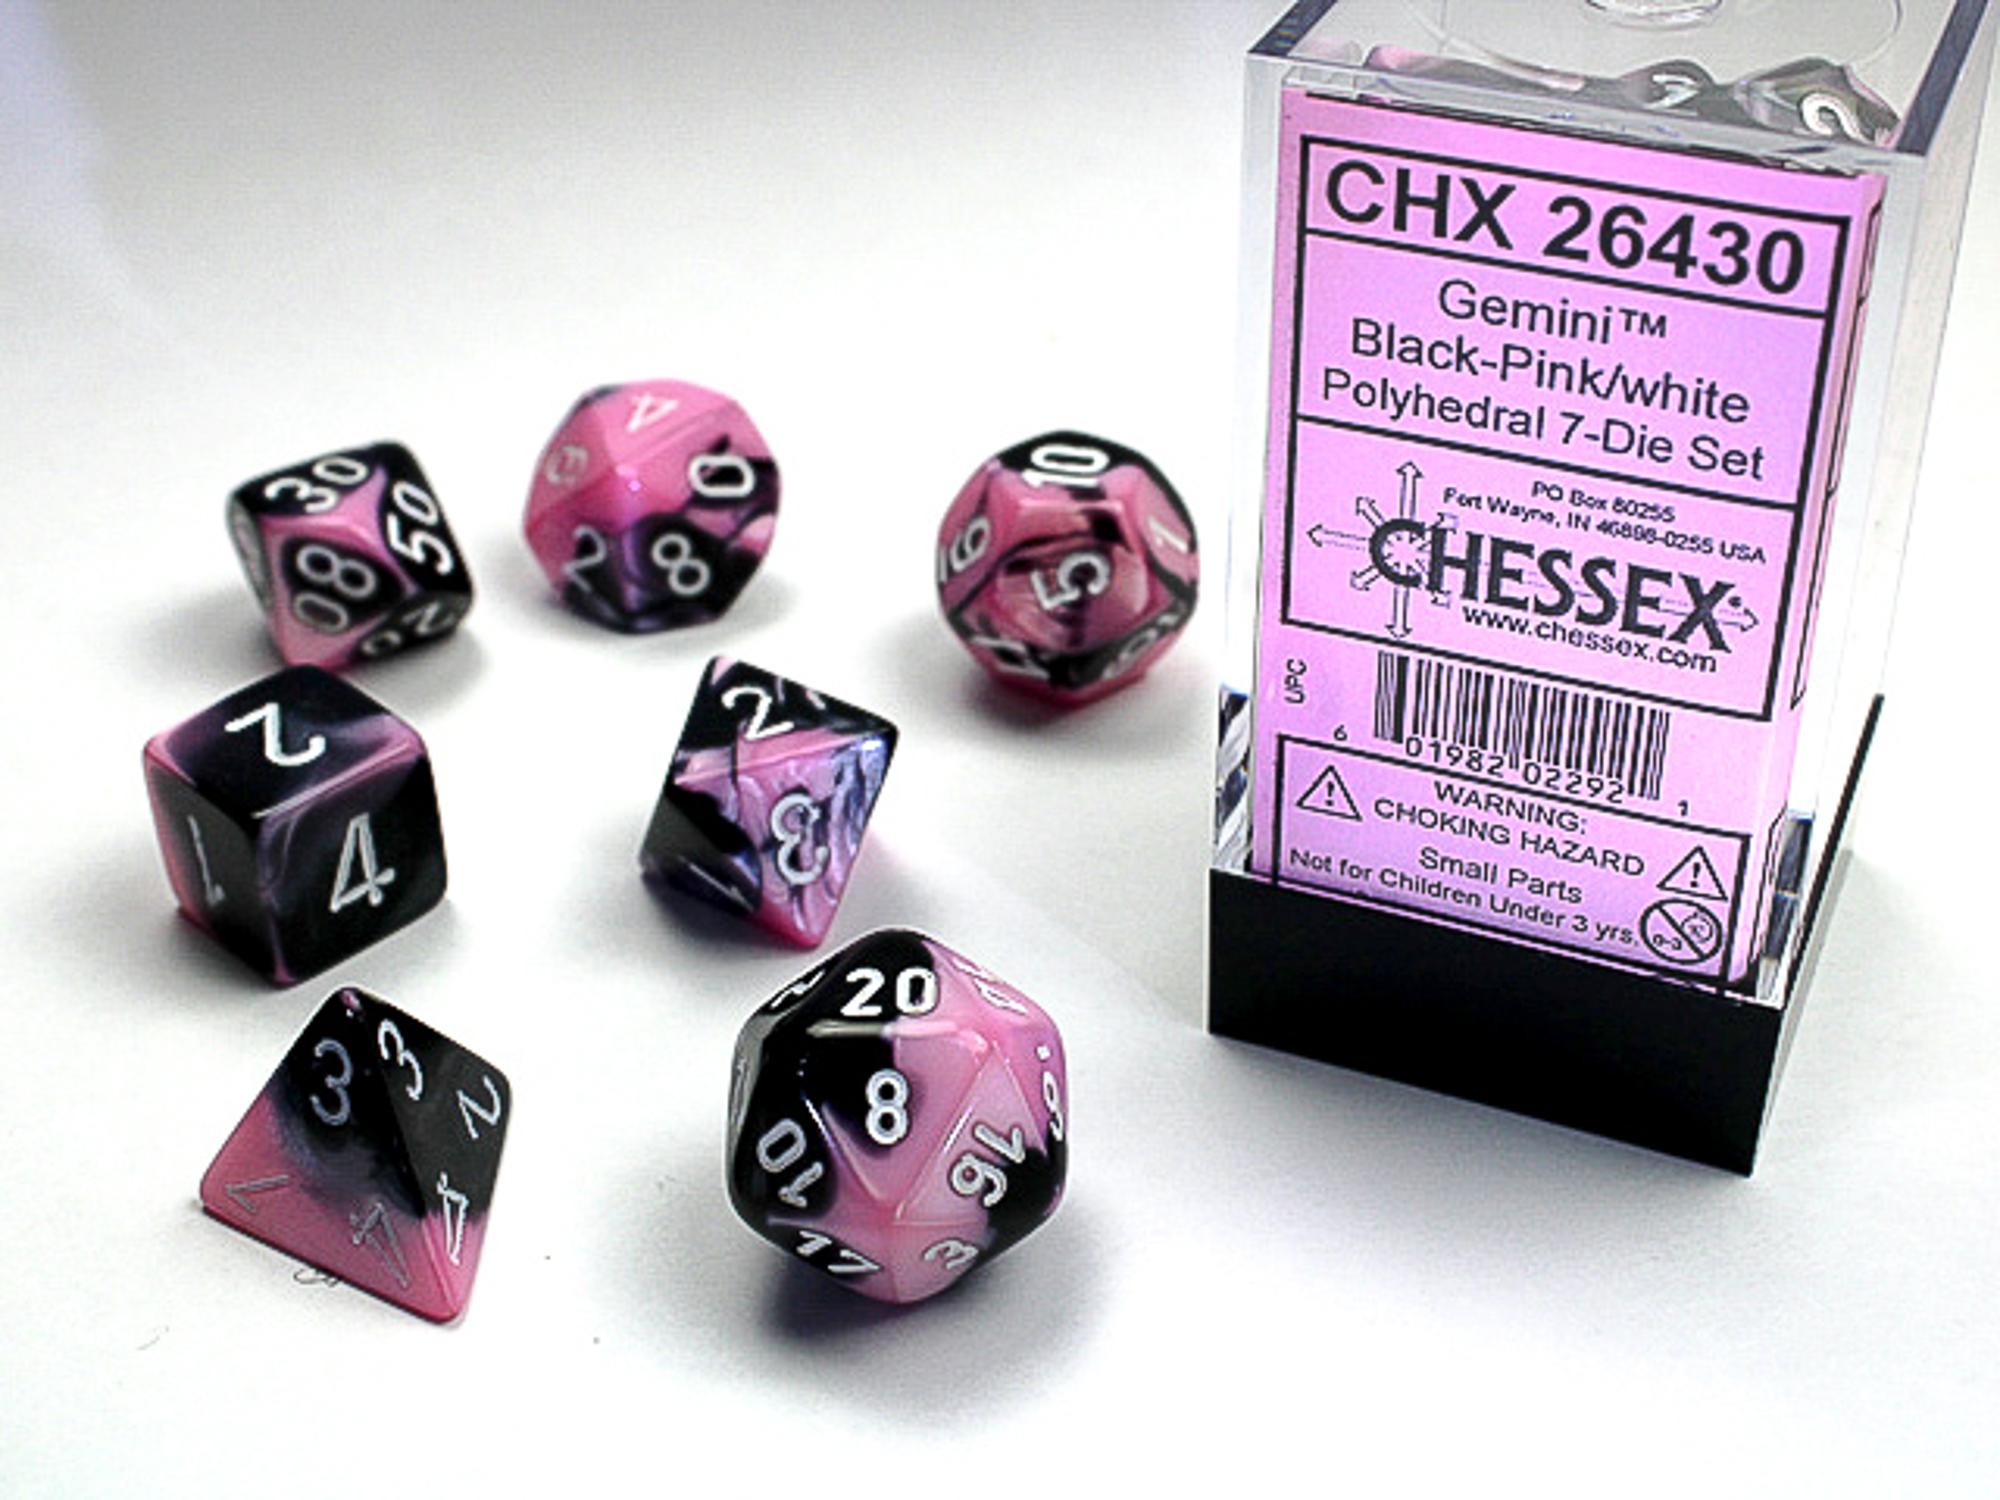 Gemini Black-Pink with White 7 Die Set